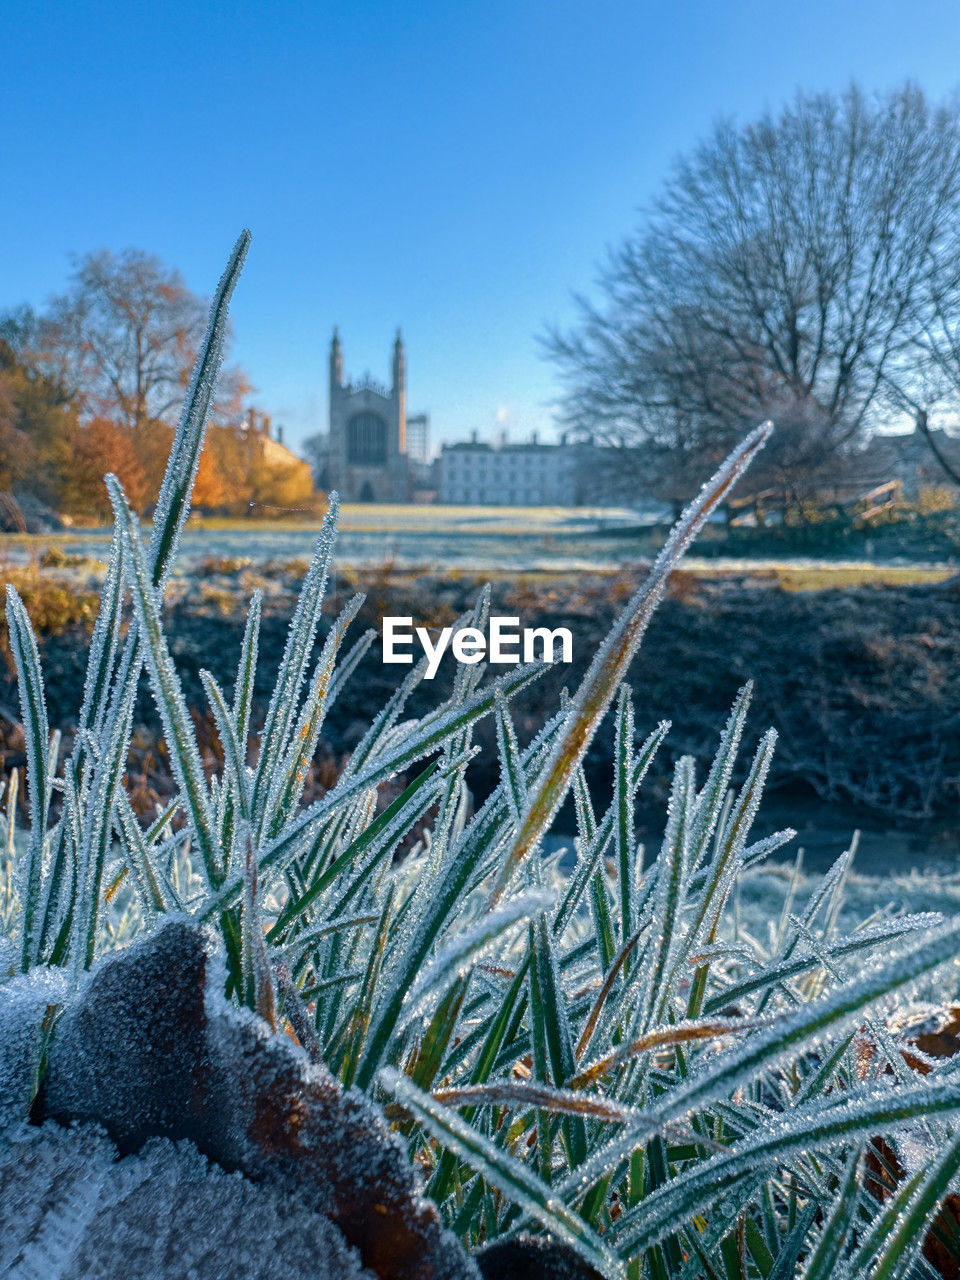 Frozen plants growing on field against kings college chapel in cambridge